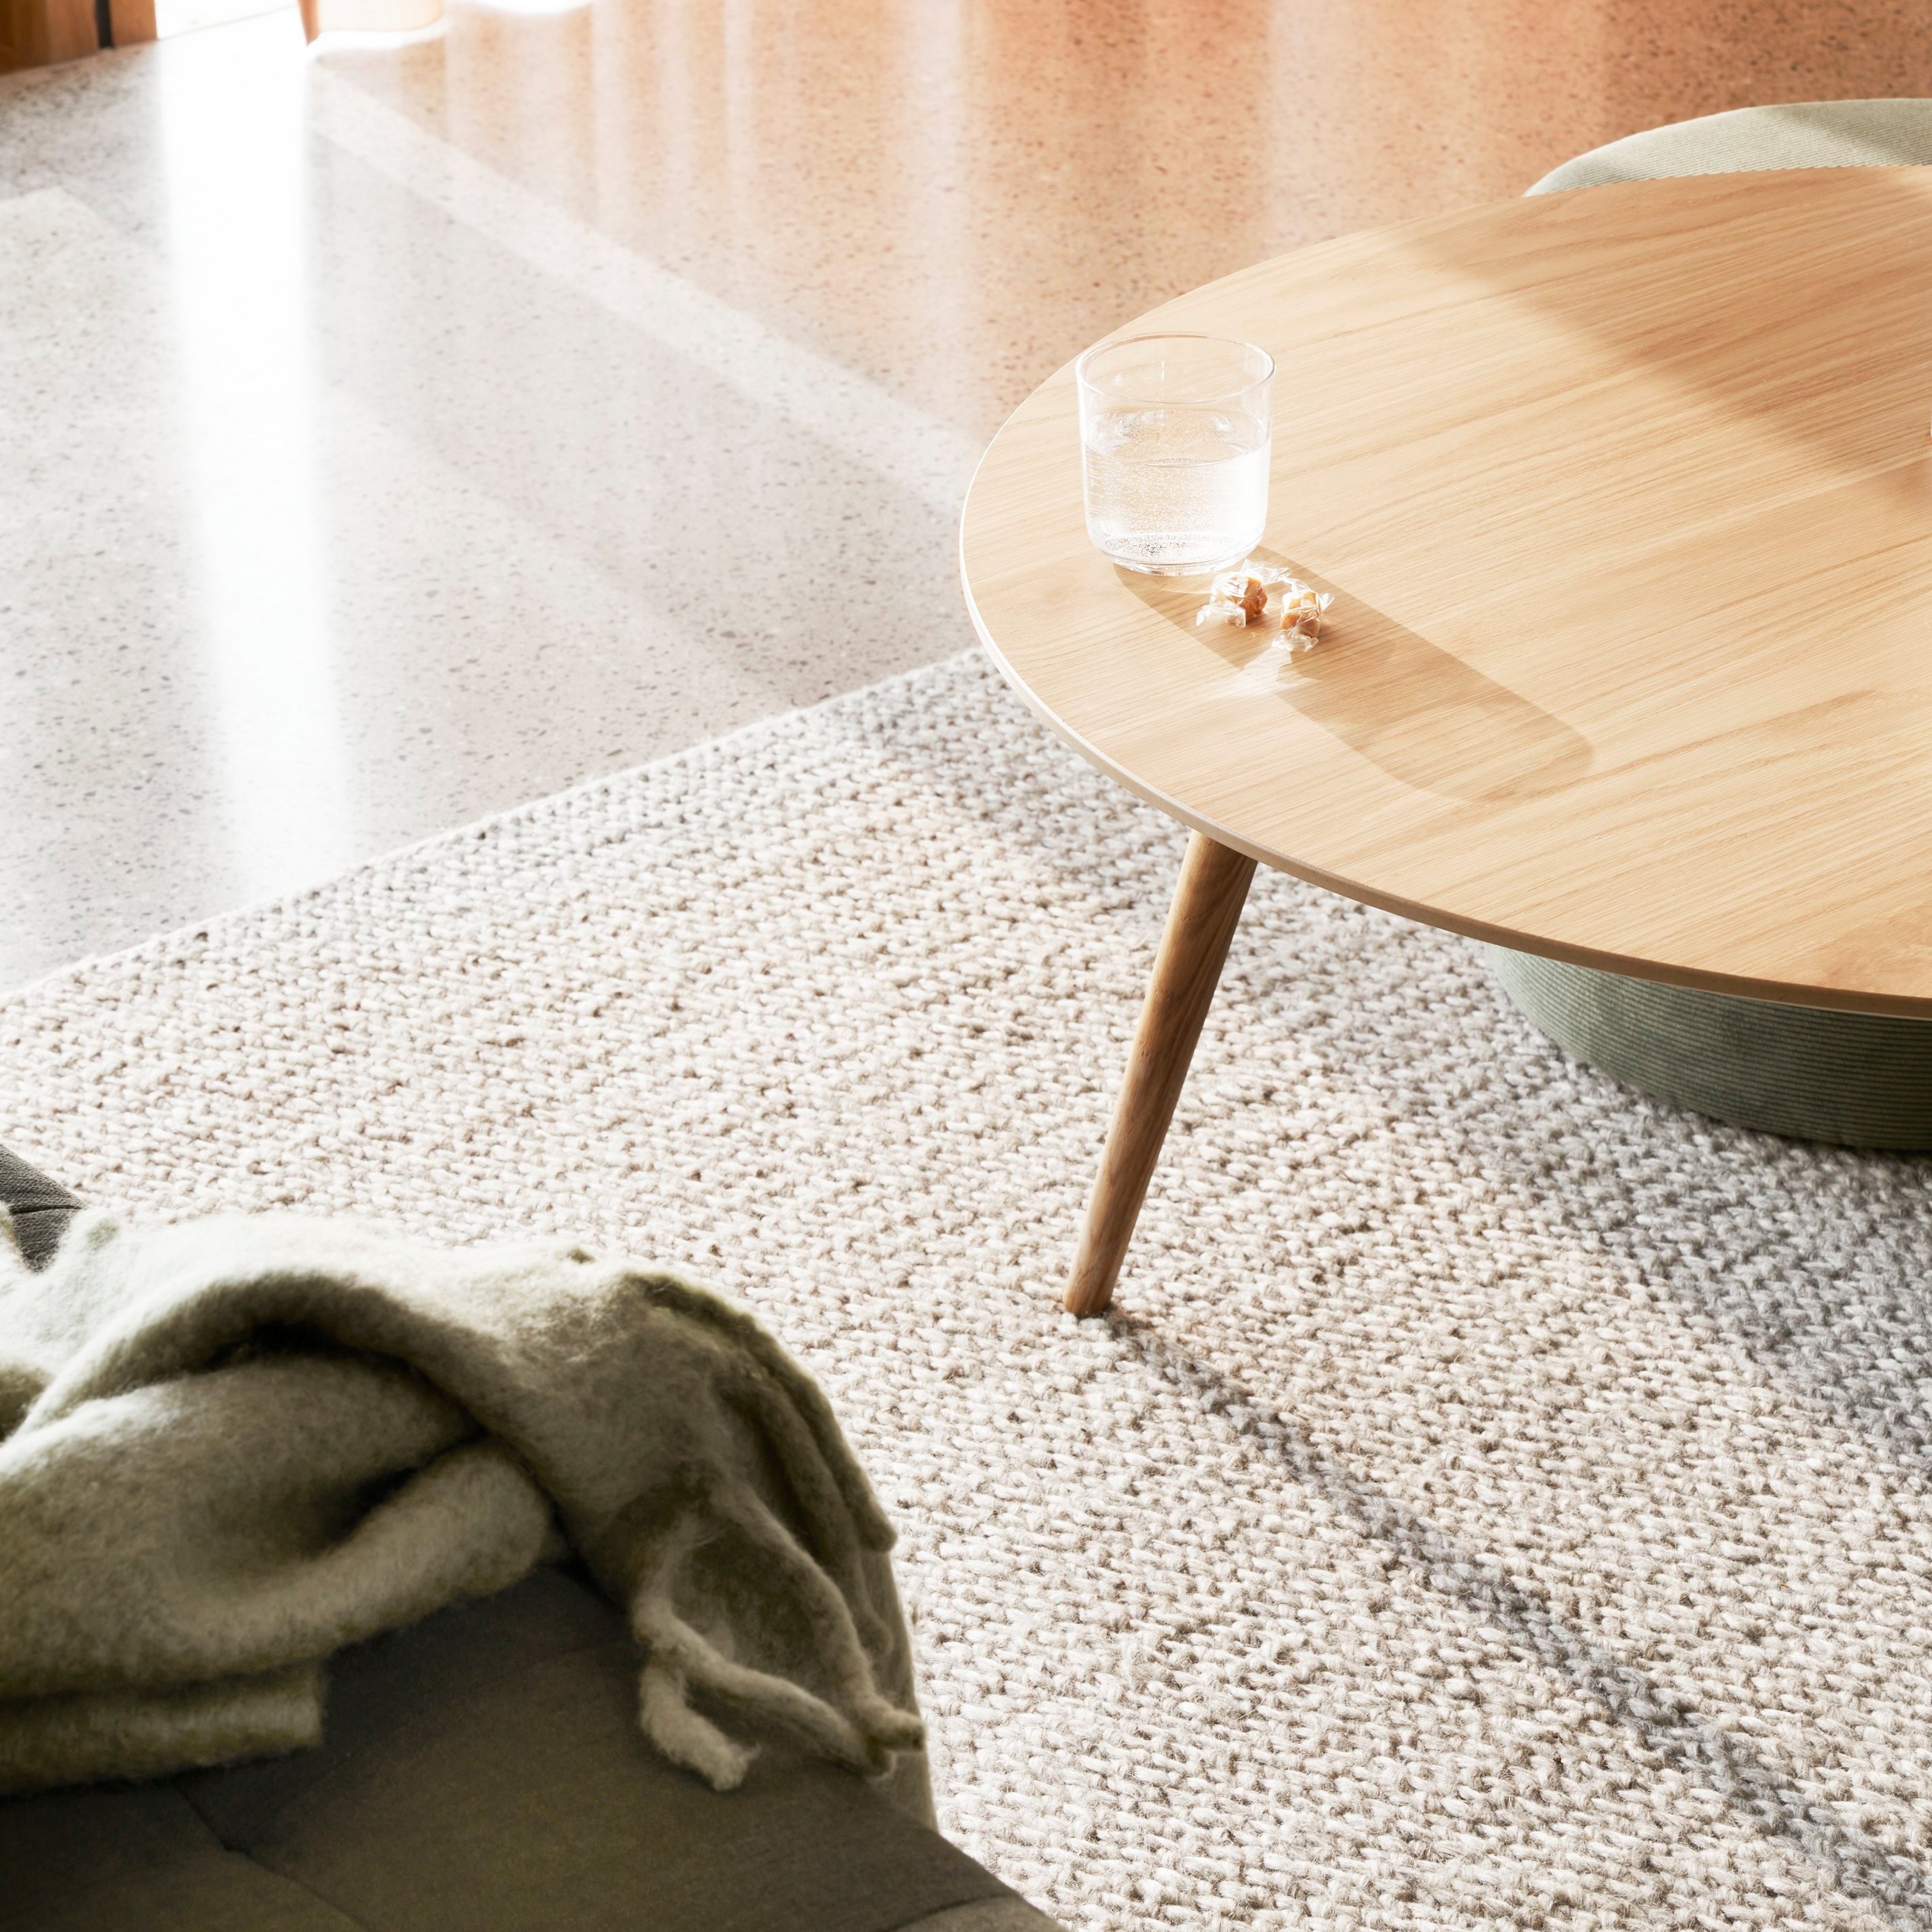 Alfombra texturizada con mesa redonda de madera, vaso de agua y una suave manta bajo la luz del sol.